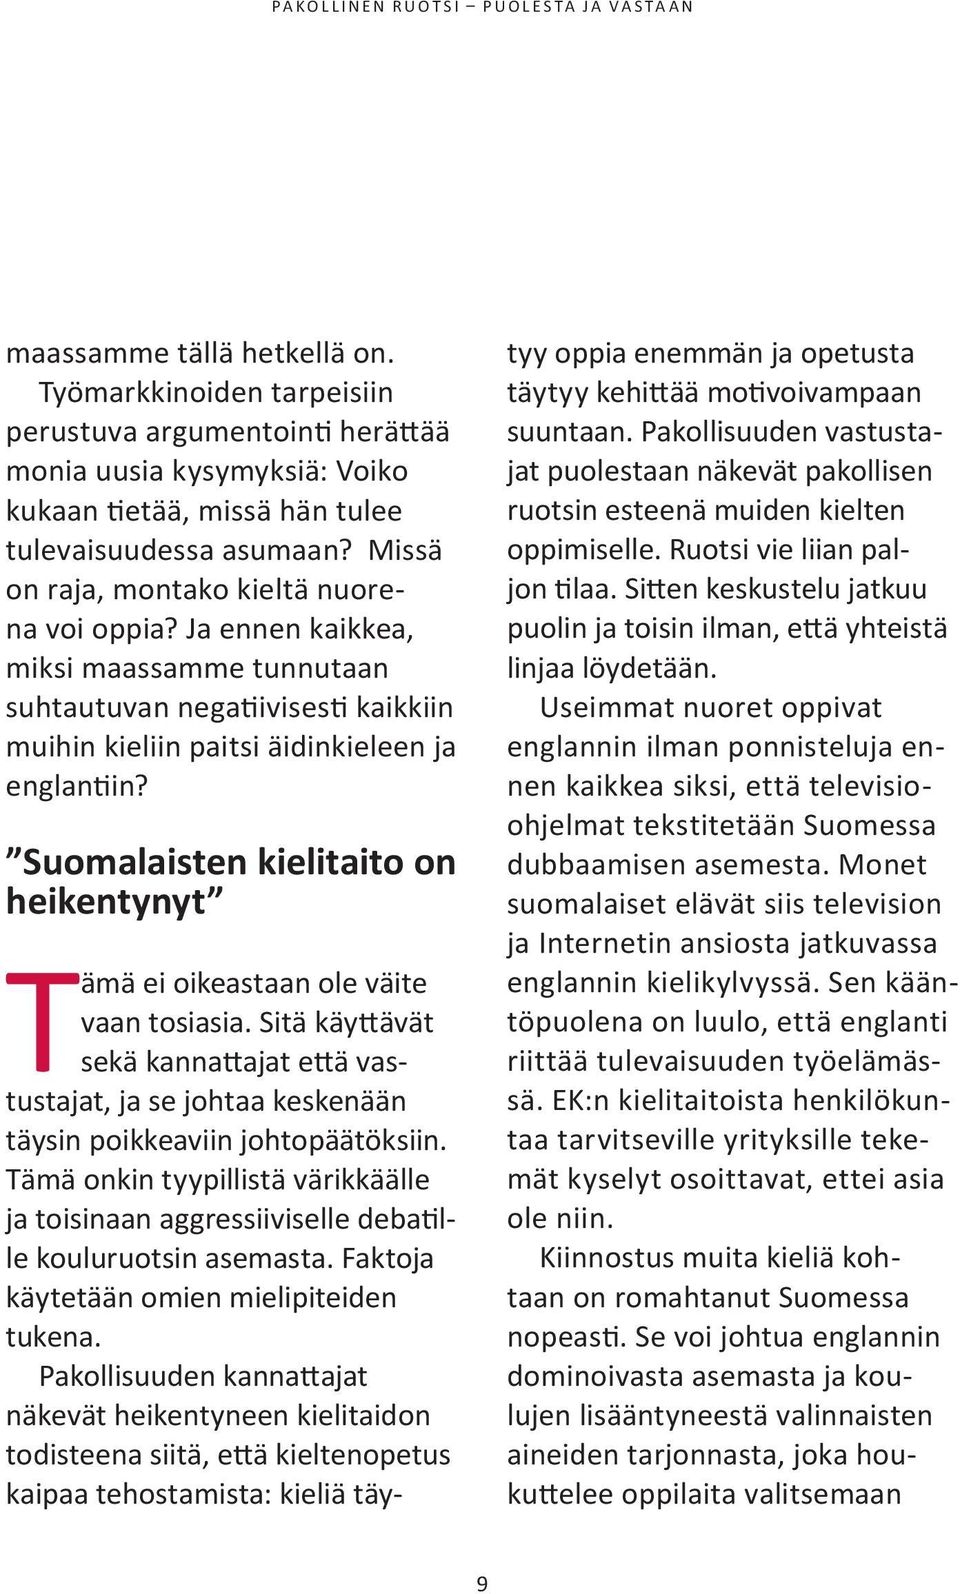 Suomalaisten kielitaito on heikentynyt Tämä ei oikeastaan ole väite vaan tosiasia. sitä käyttävät sekä kannattajat että vastustajat, ja se johtaa keskenään täysin poikkeaviin johtopäätöksiin.